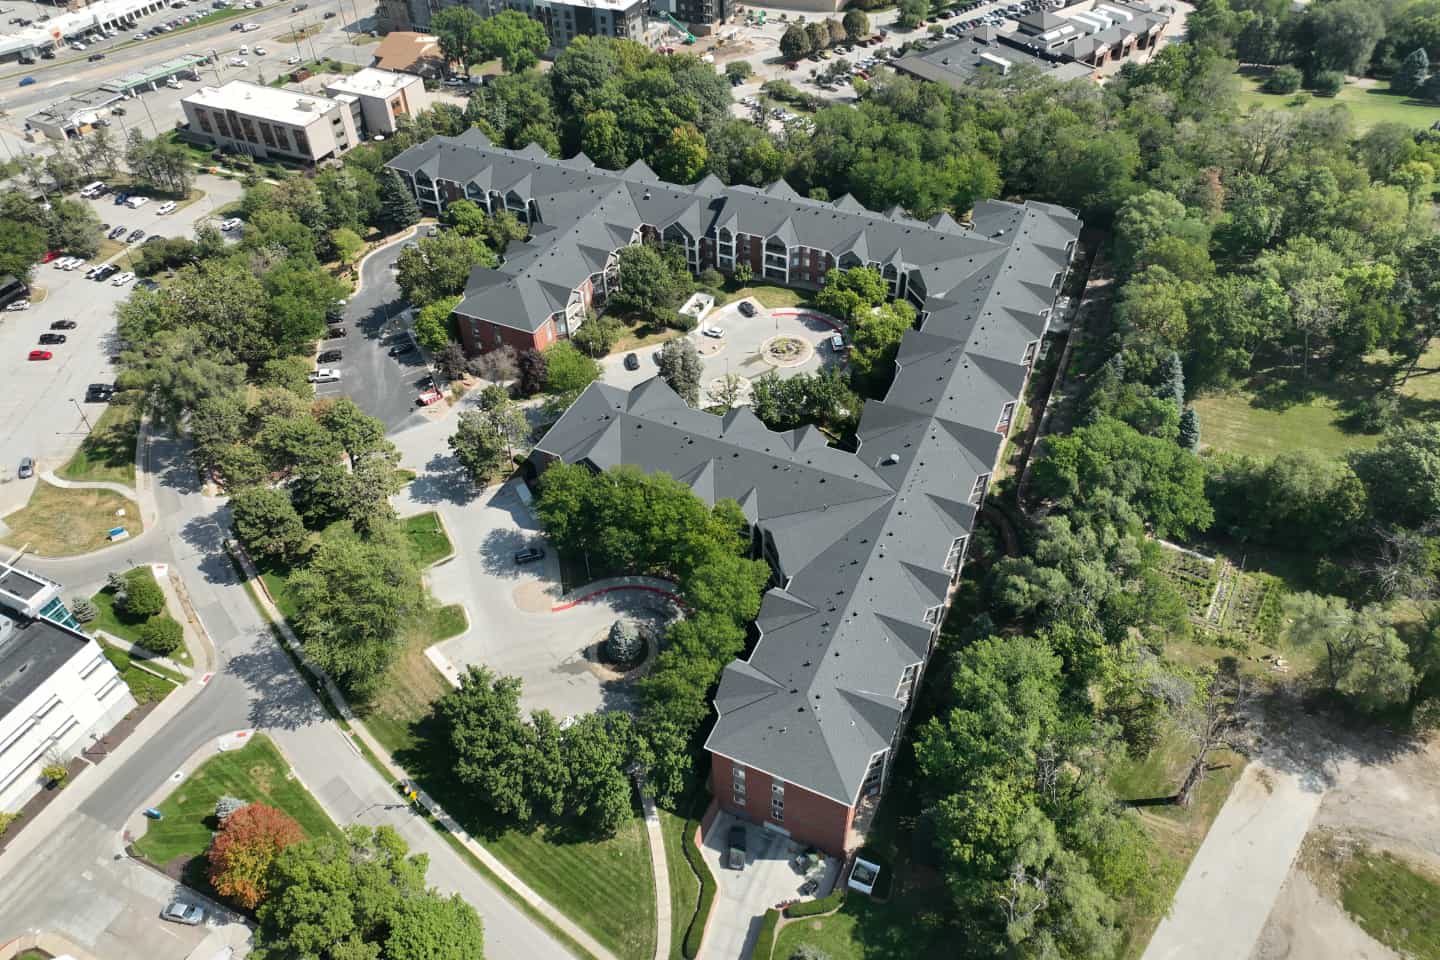 Aerial View of the Arboretum Village campus